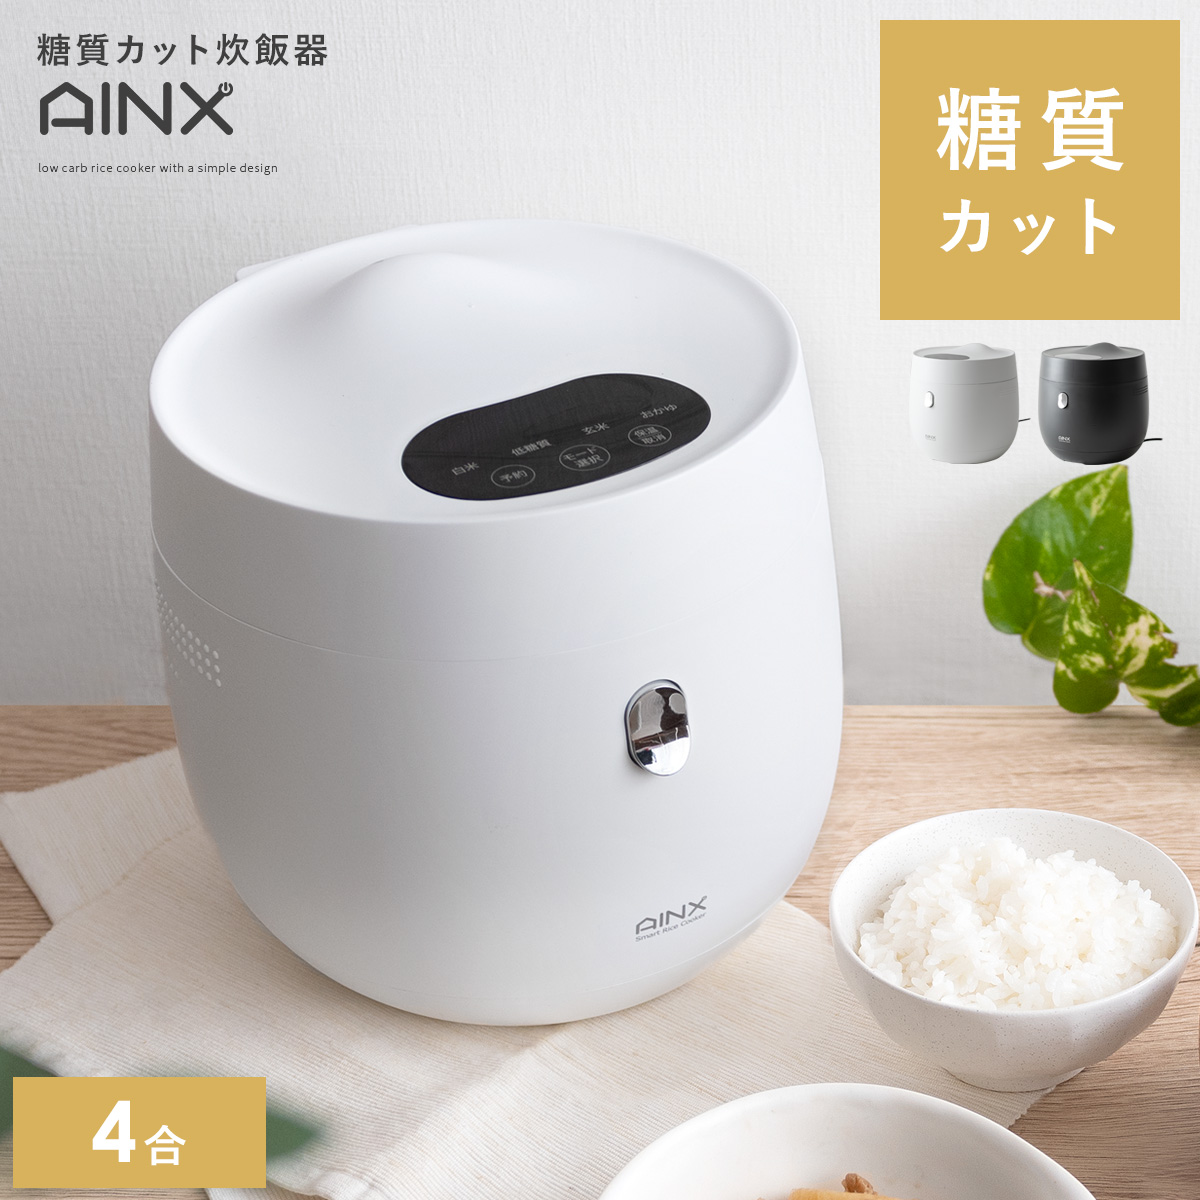 糖質カット炊飯器 AINX(アイネクス) | 【公式】 家具通販のエア・リゾーム